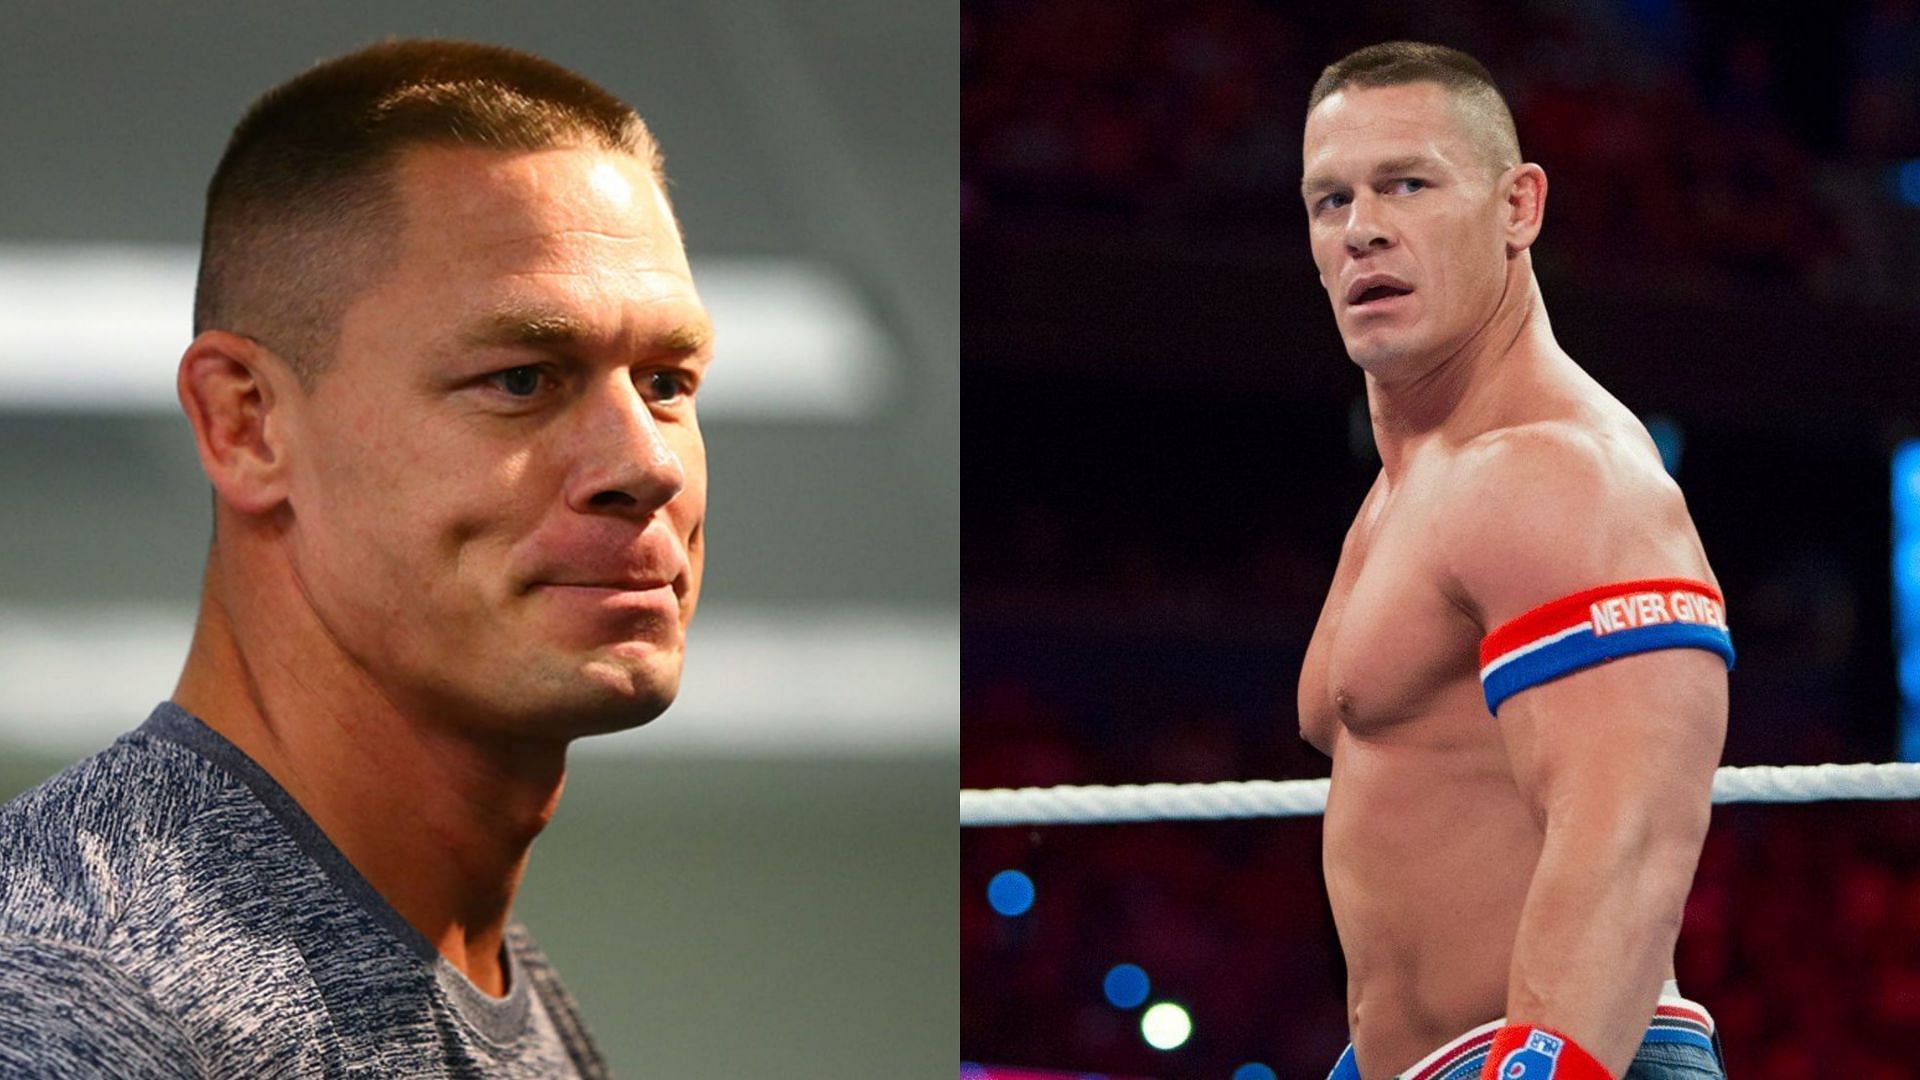 WWE legend John Cena is now a part-time superstar